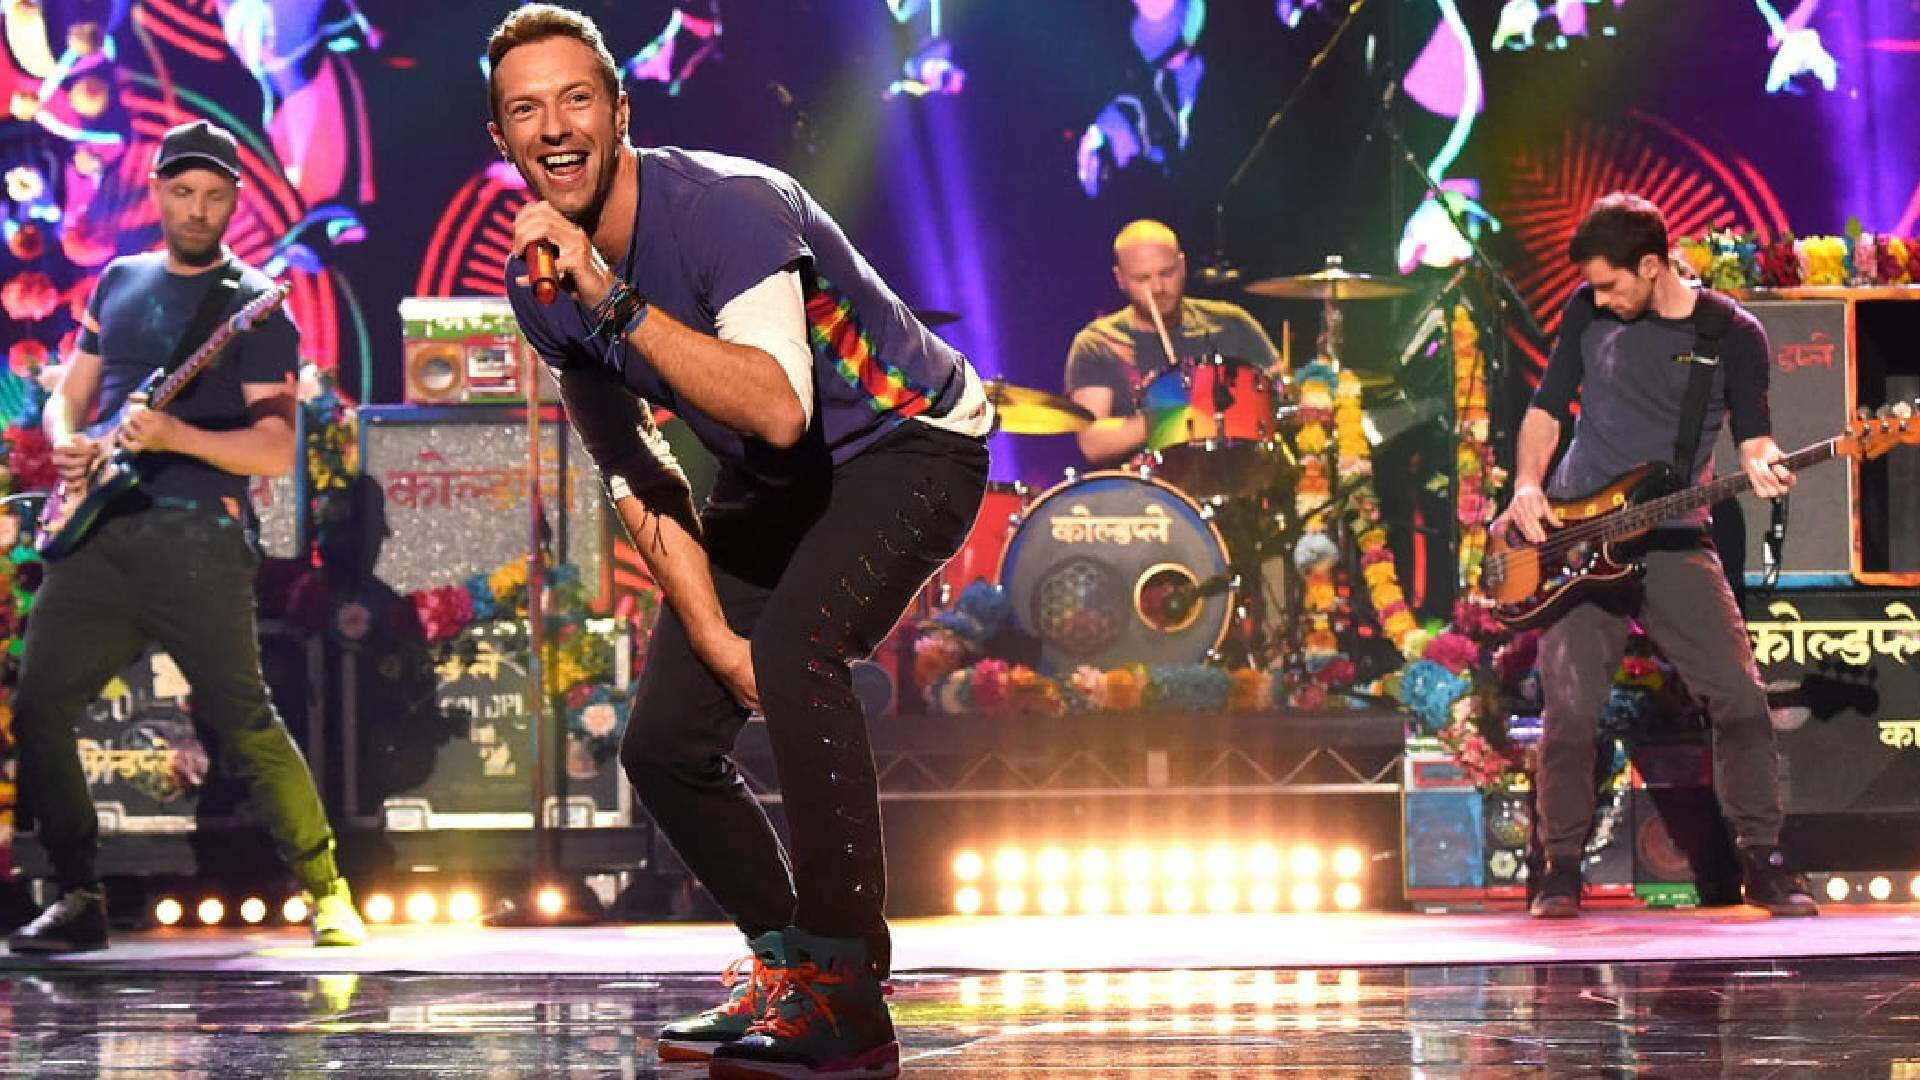 Após quatro shows esgotados, Coldplay confirma quinta apresentação em São Paulo - Metropolitana FM